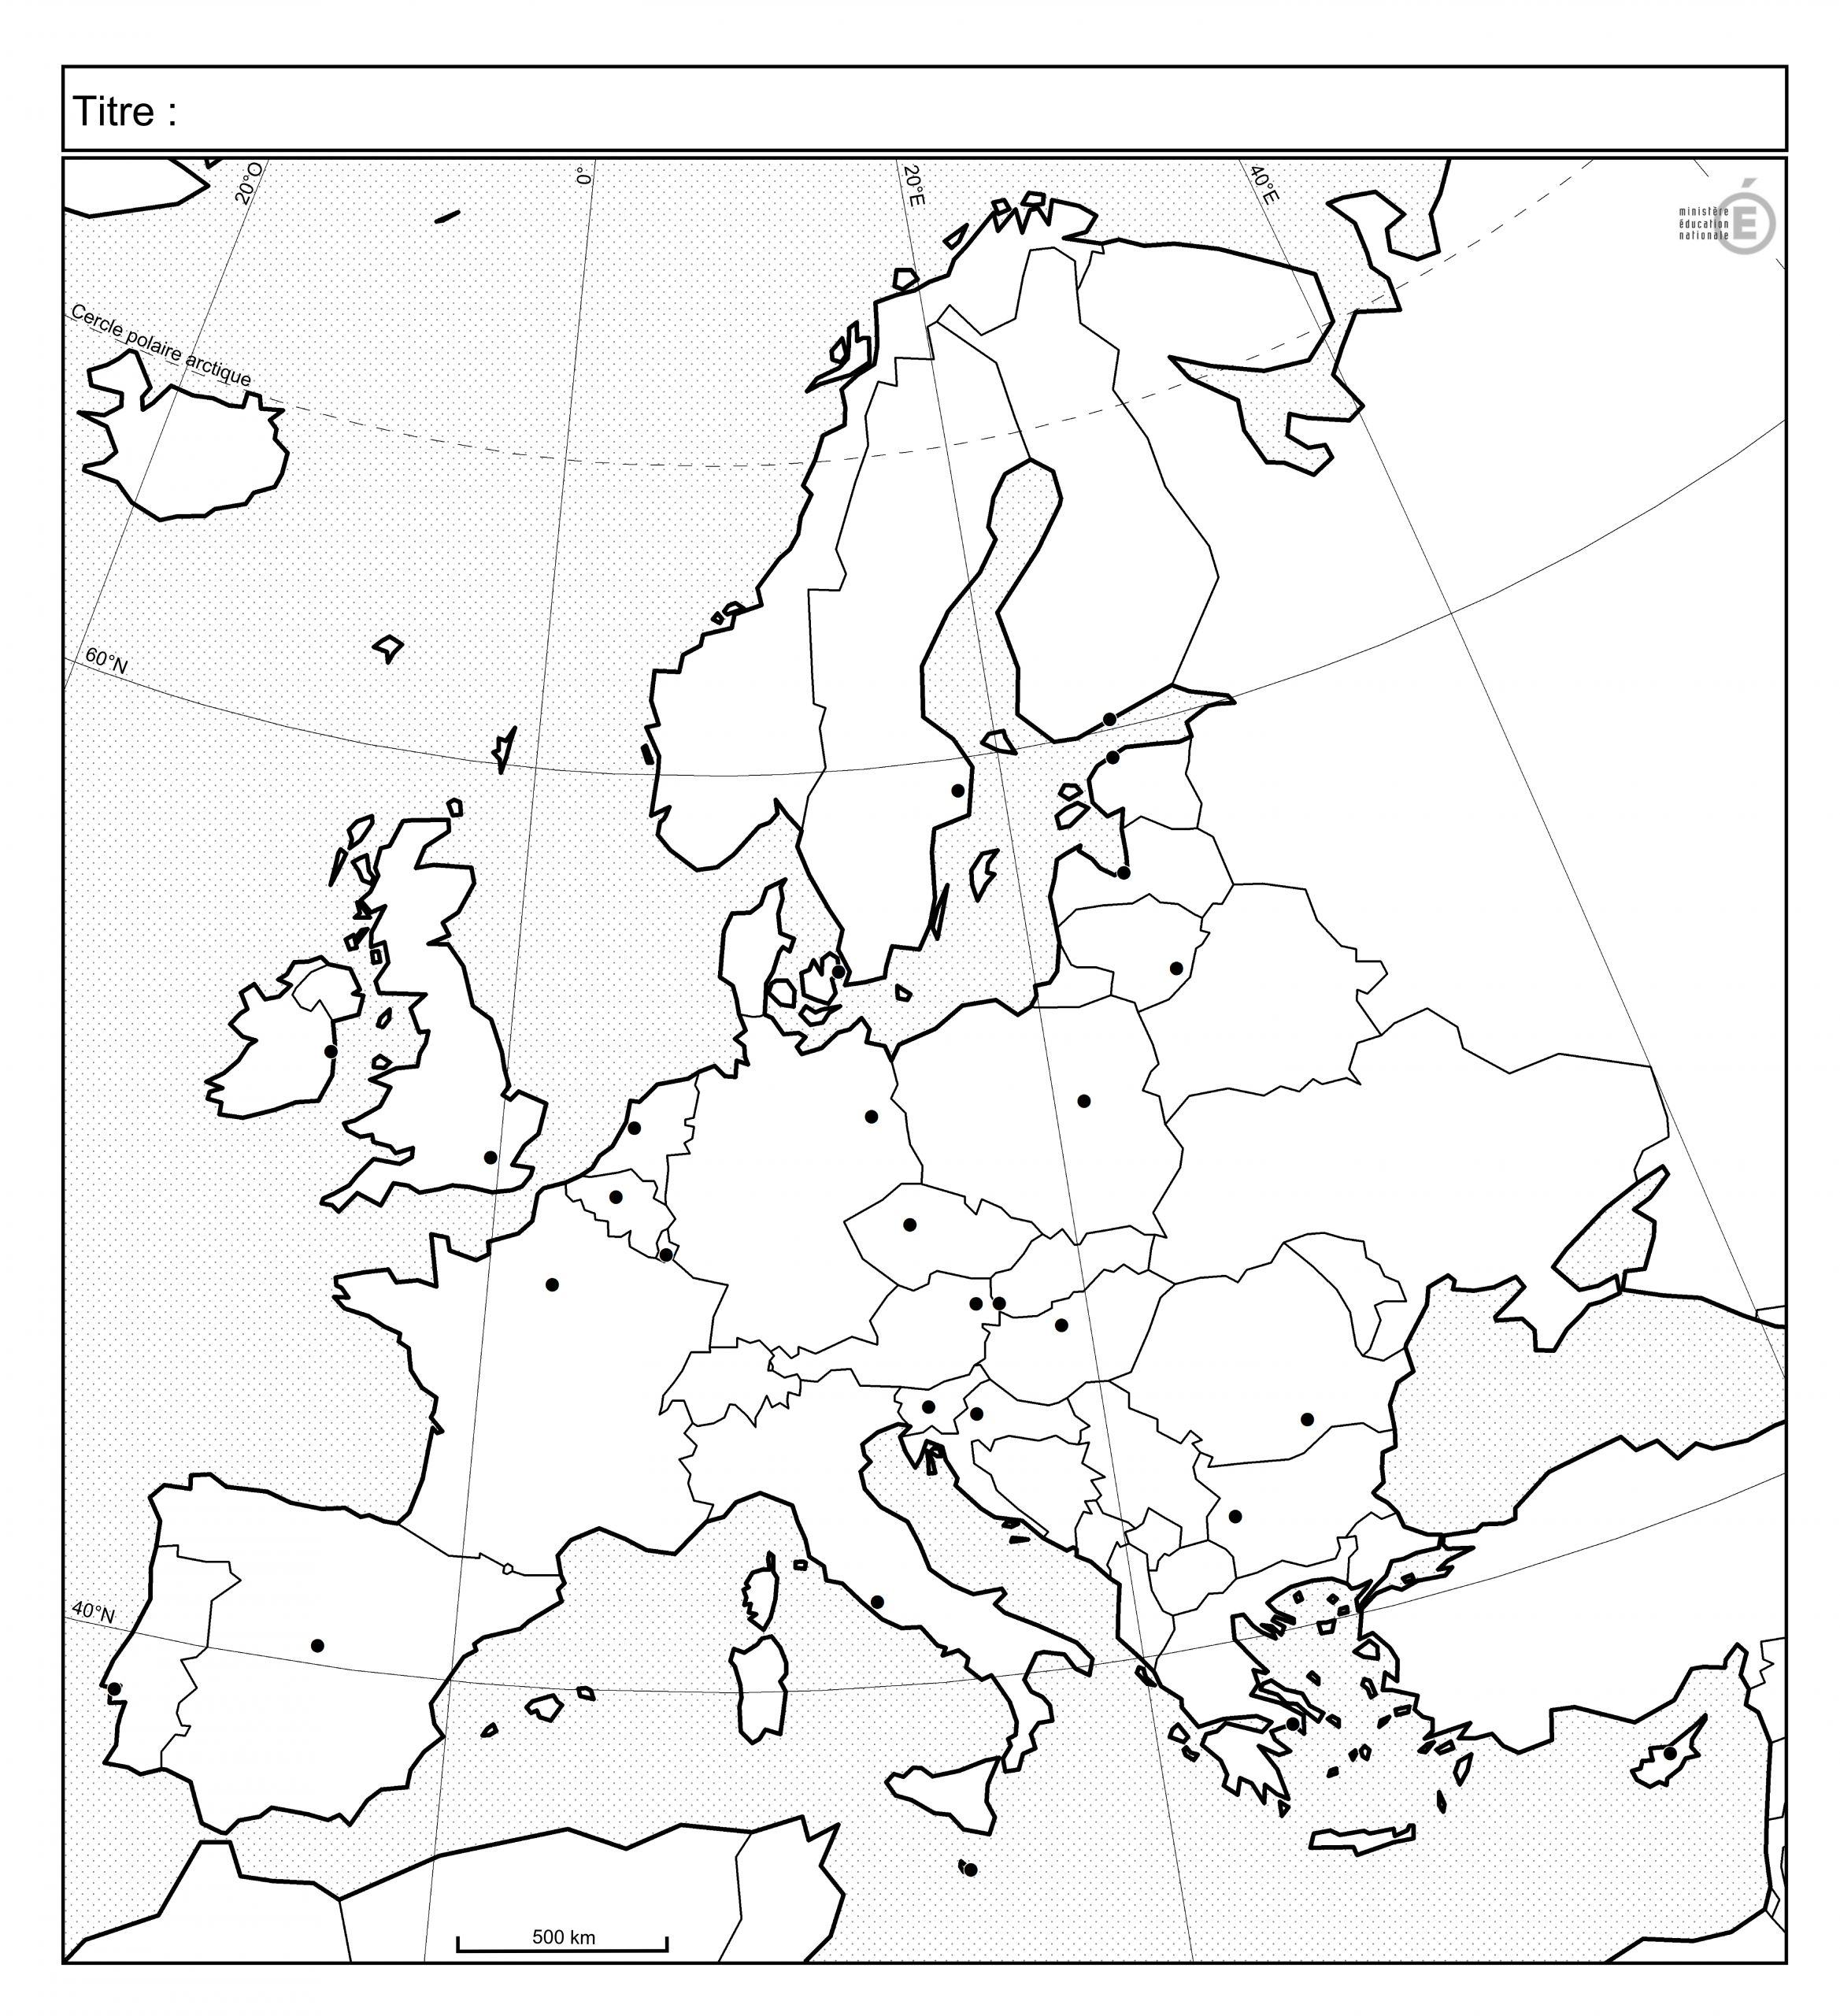 Fonds De Carte - Histoire-Géographie - Éduscol intérieur Carte D Europe À Imprimer